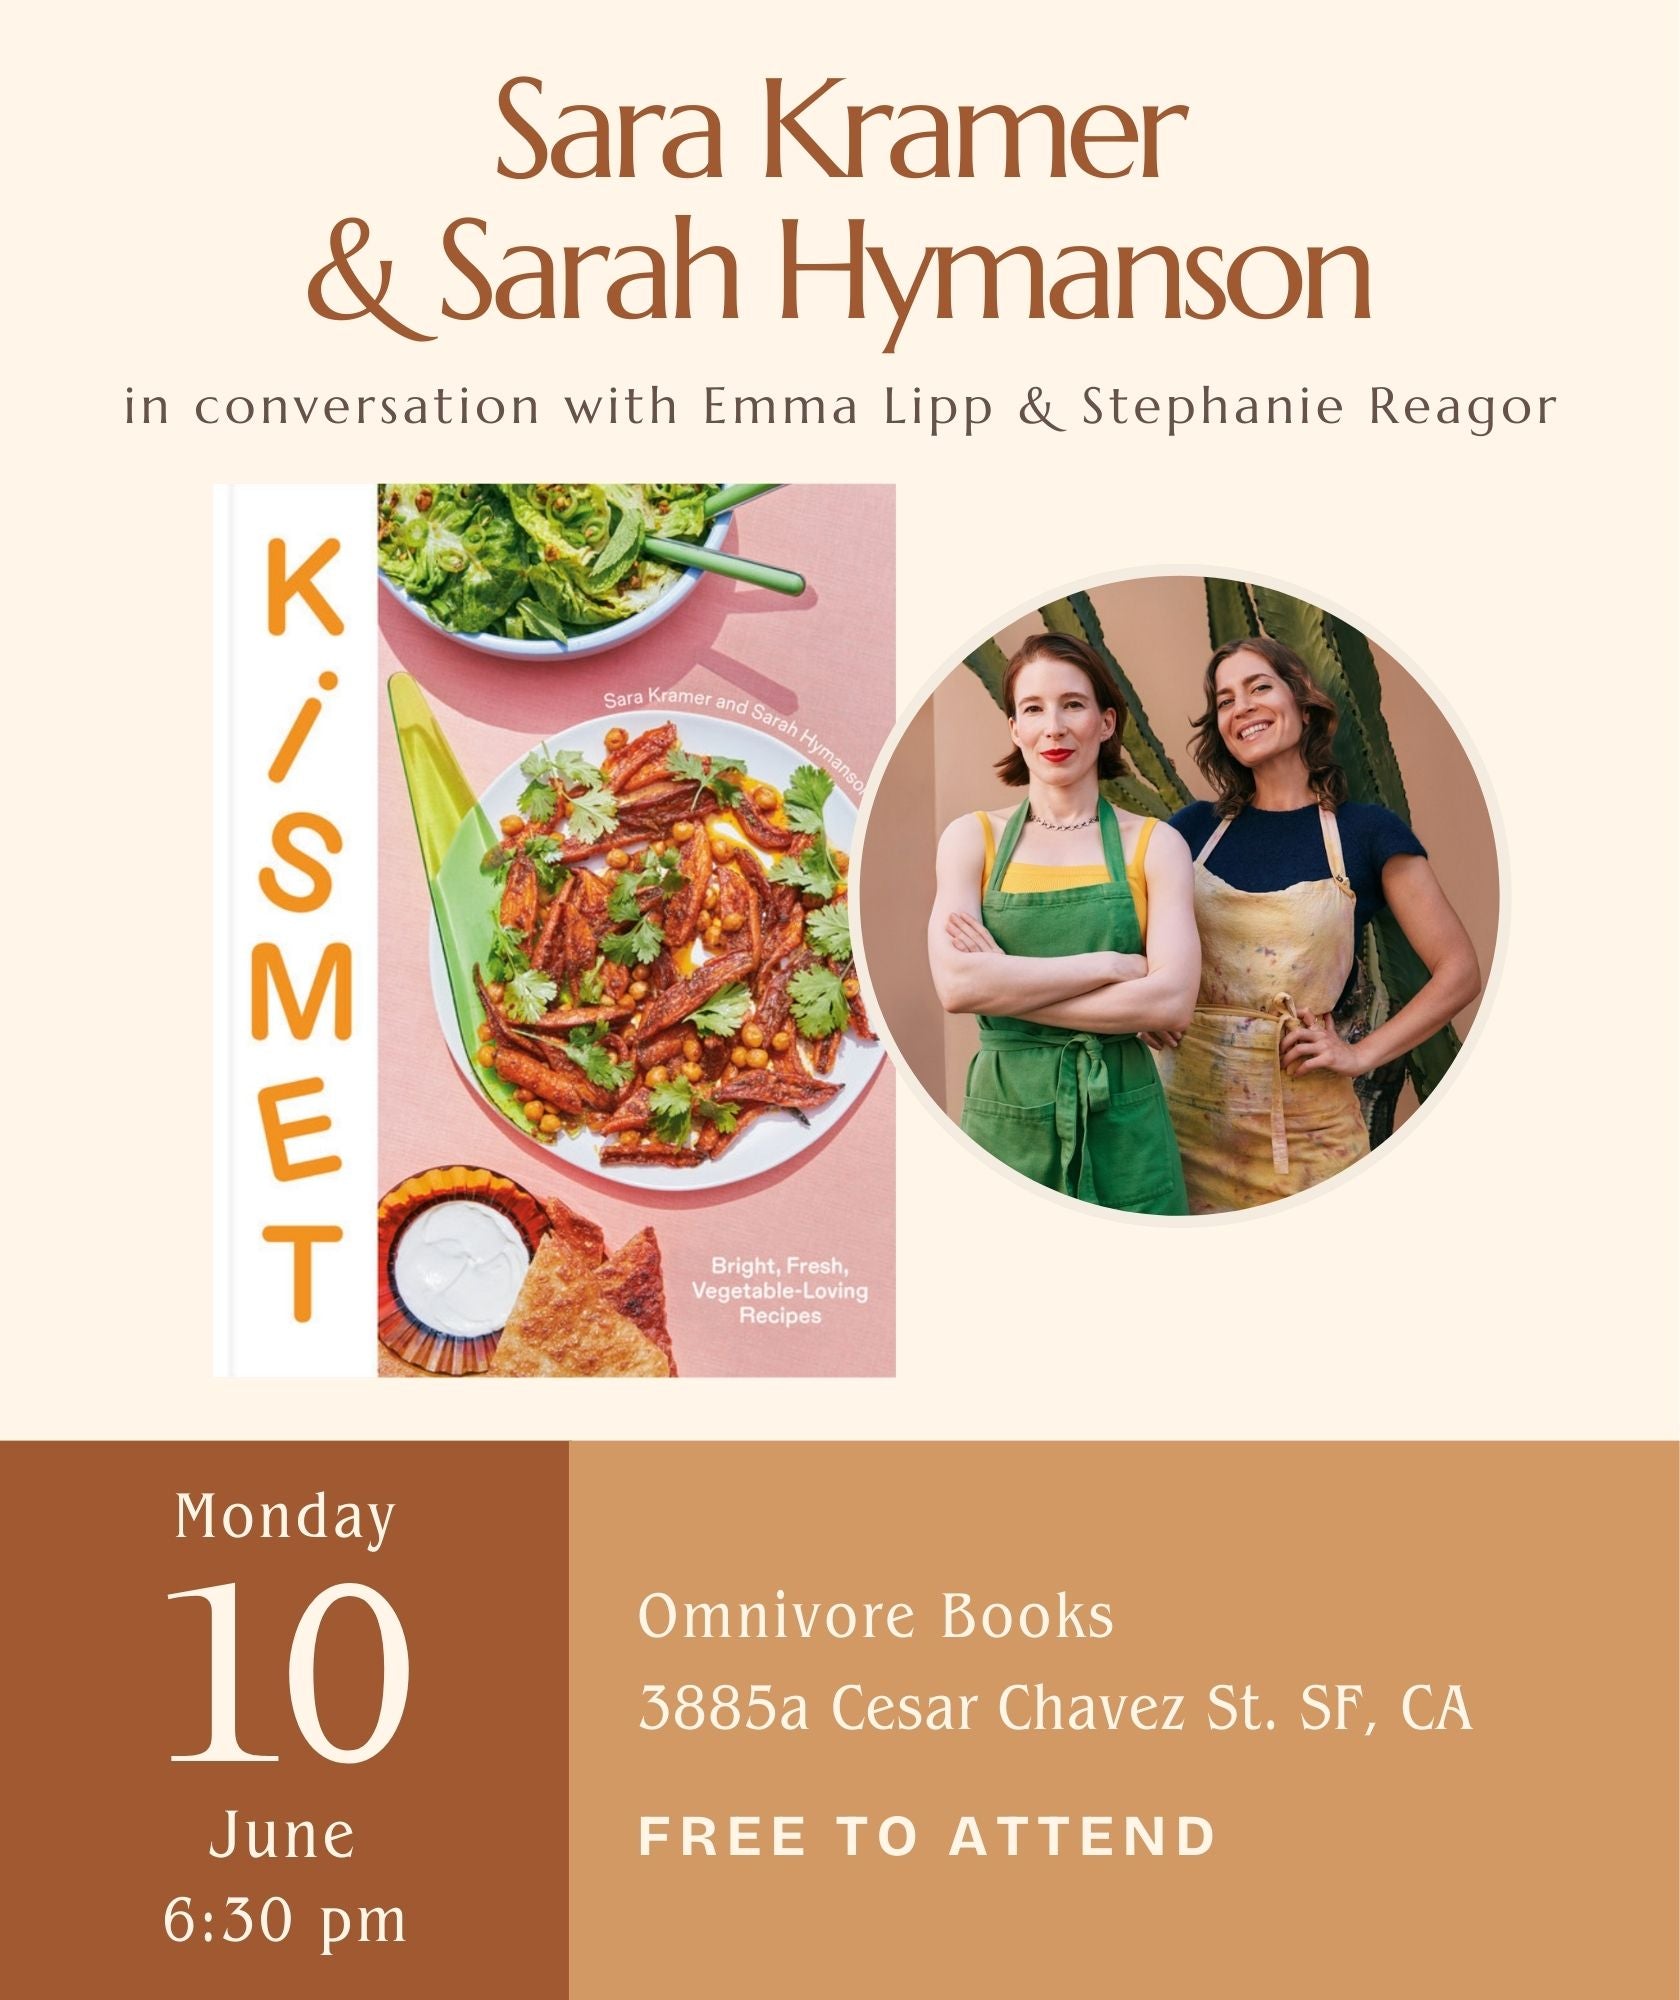 Sara Kramer & Sarah Hymanson Author Talk • Kismet: Bright, Fresh, Vegetable-Loving Recipes